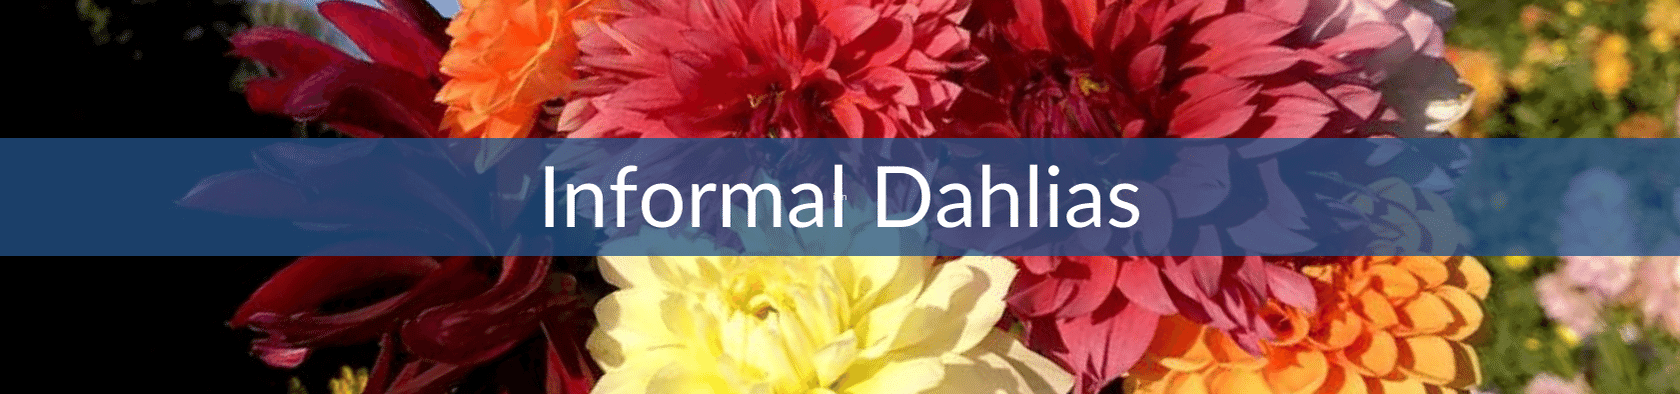 Informal Dahlias.png__PID:e437f915-6f4f-4b52-9c3f-f0a4e3108479